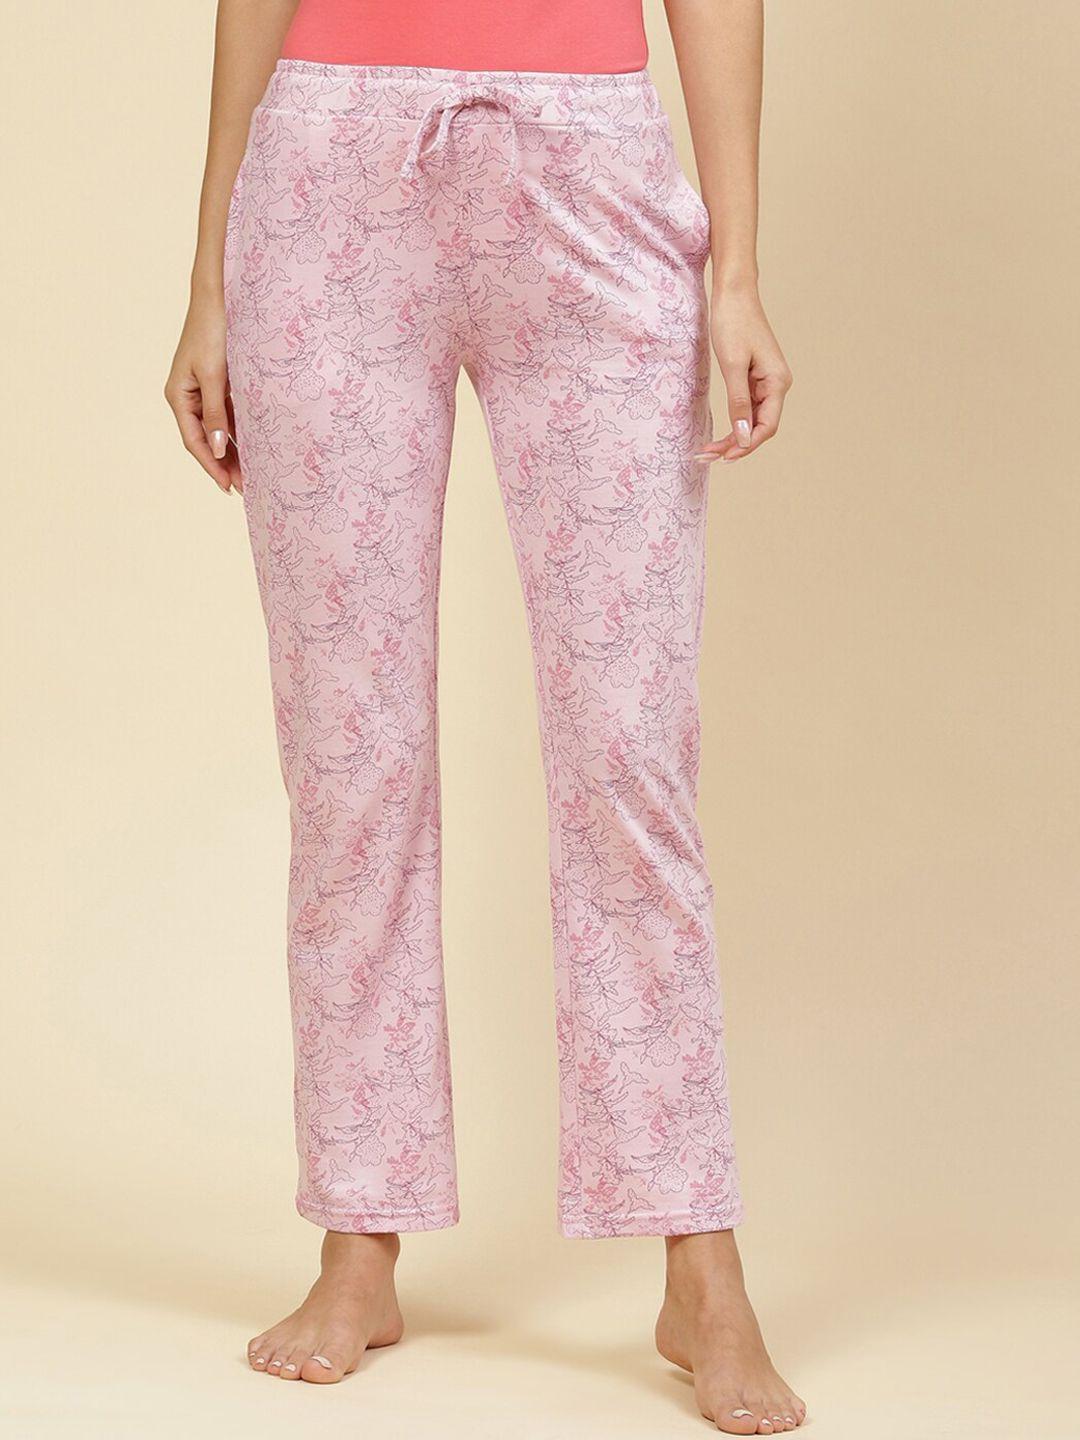 monte-carlo-women-cotton-floral-printed-lounge-pants